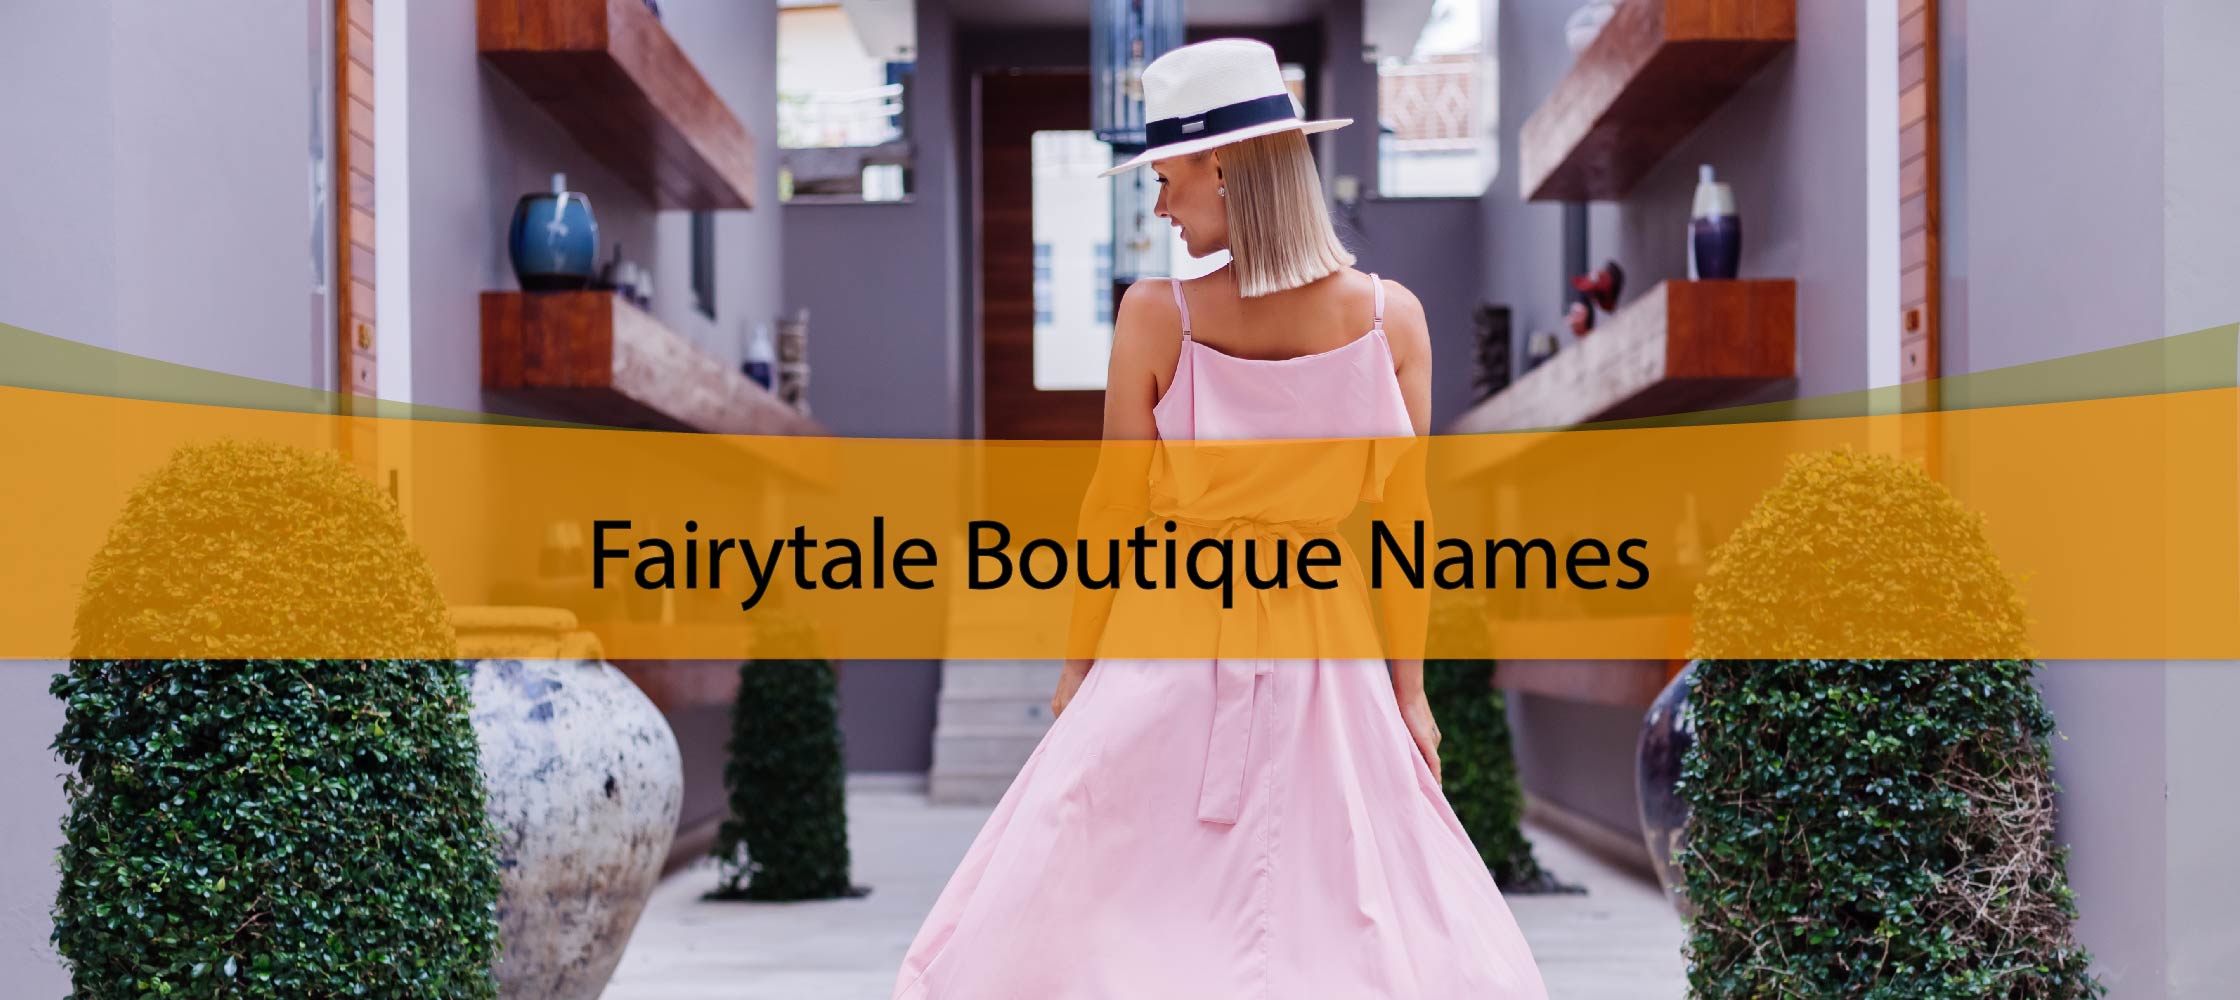 Fairytale Boutique Names